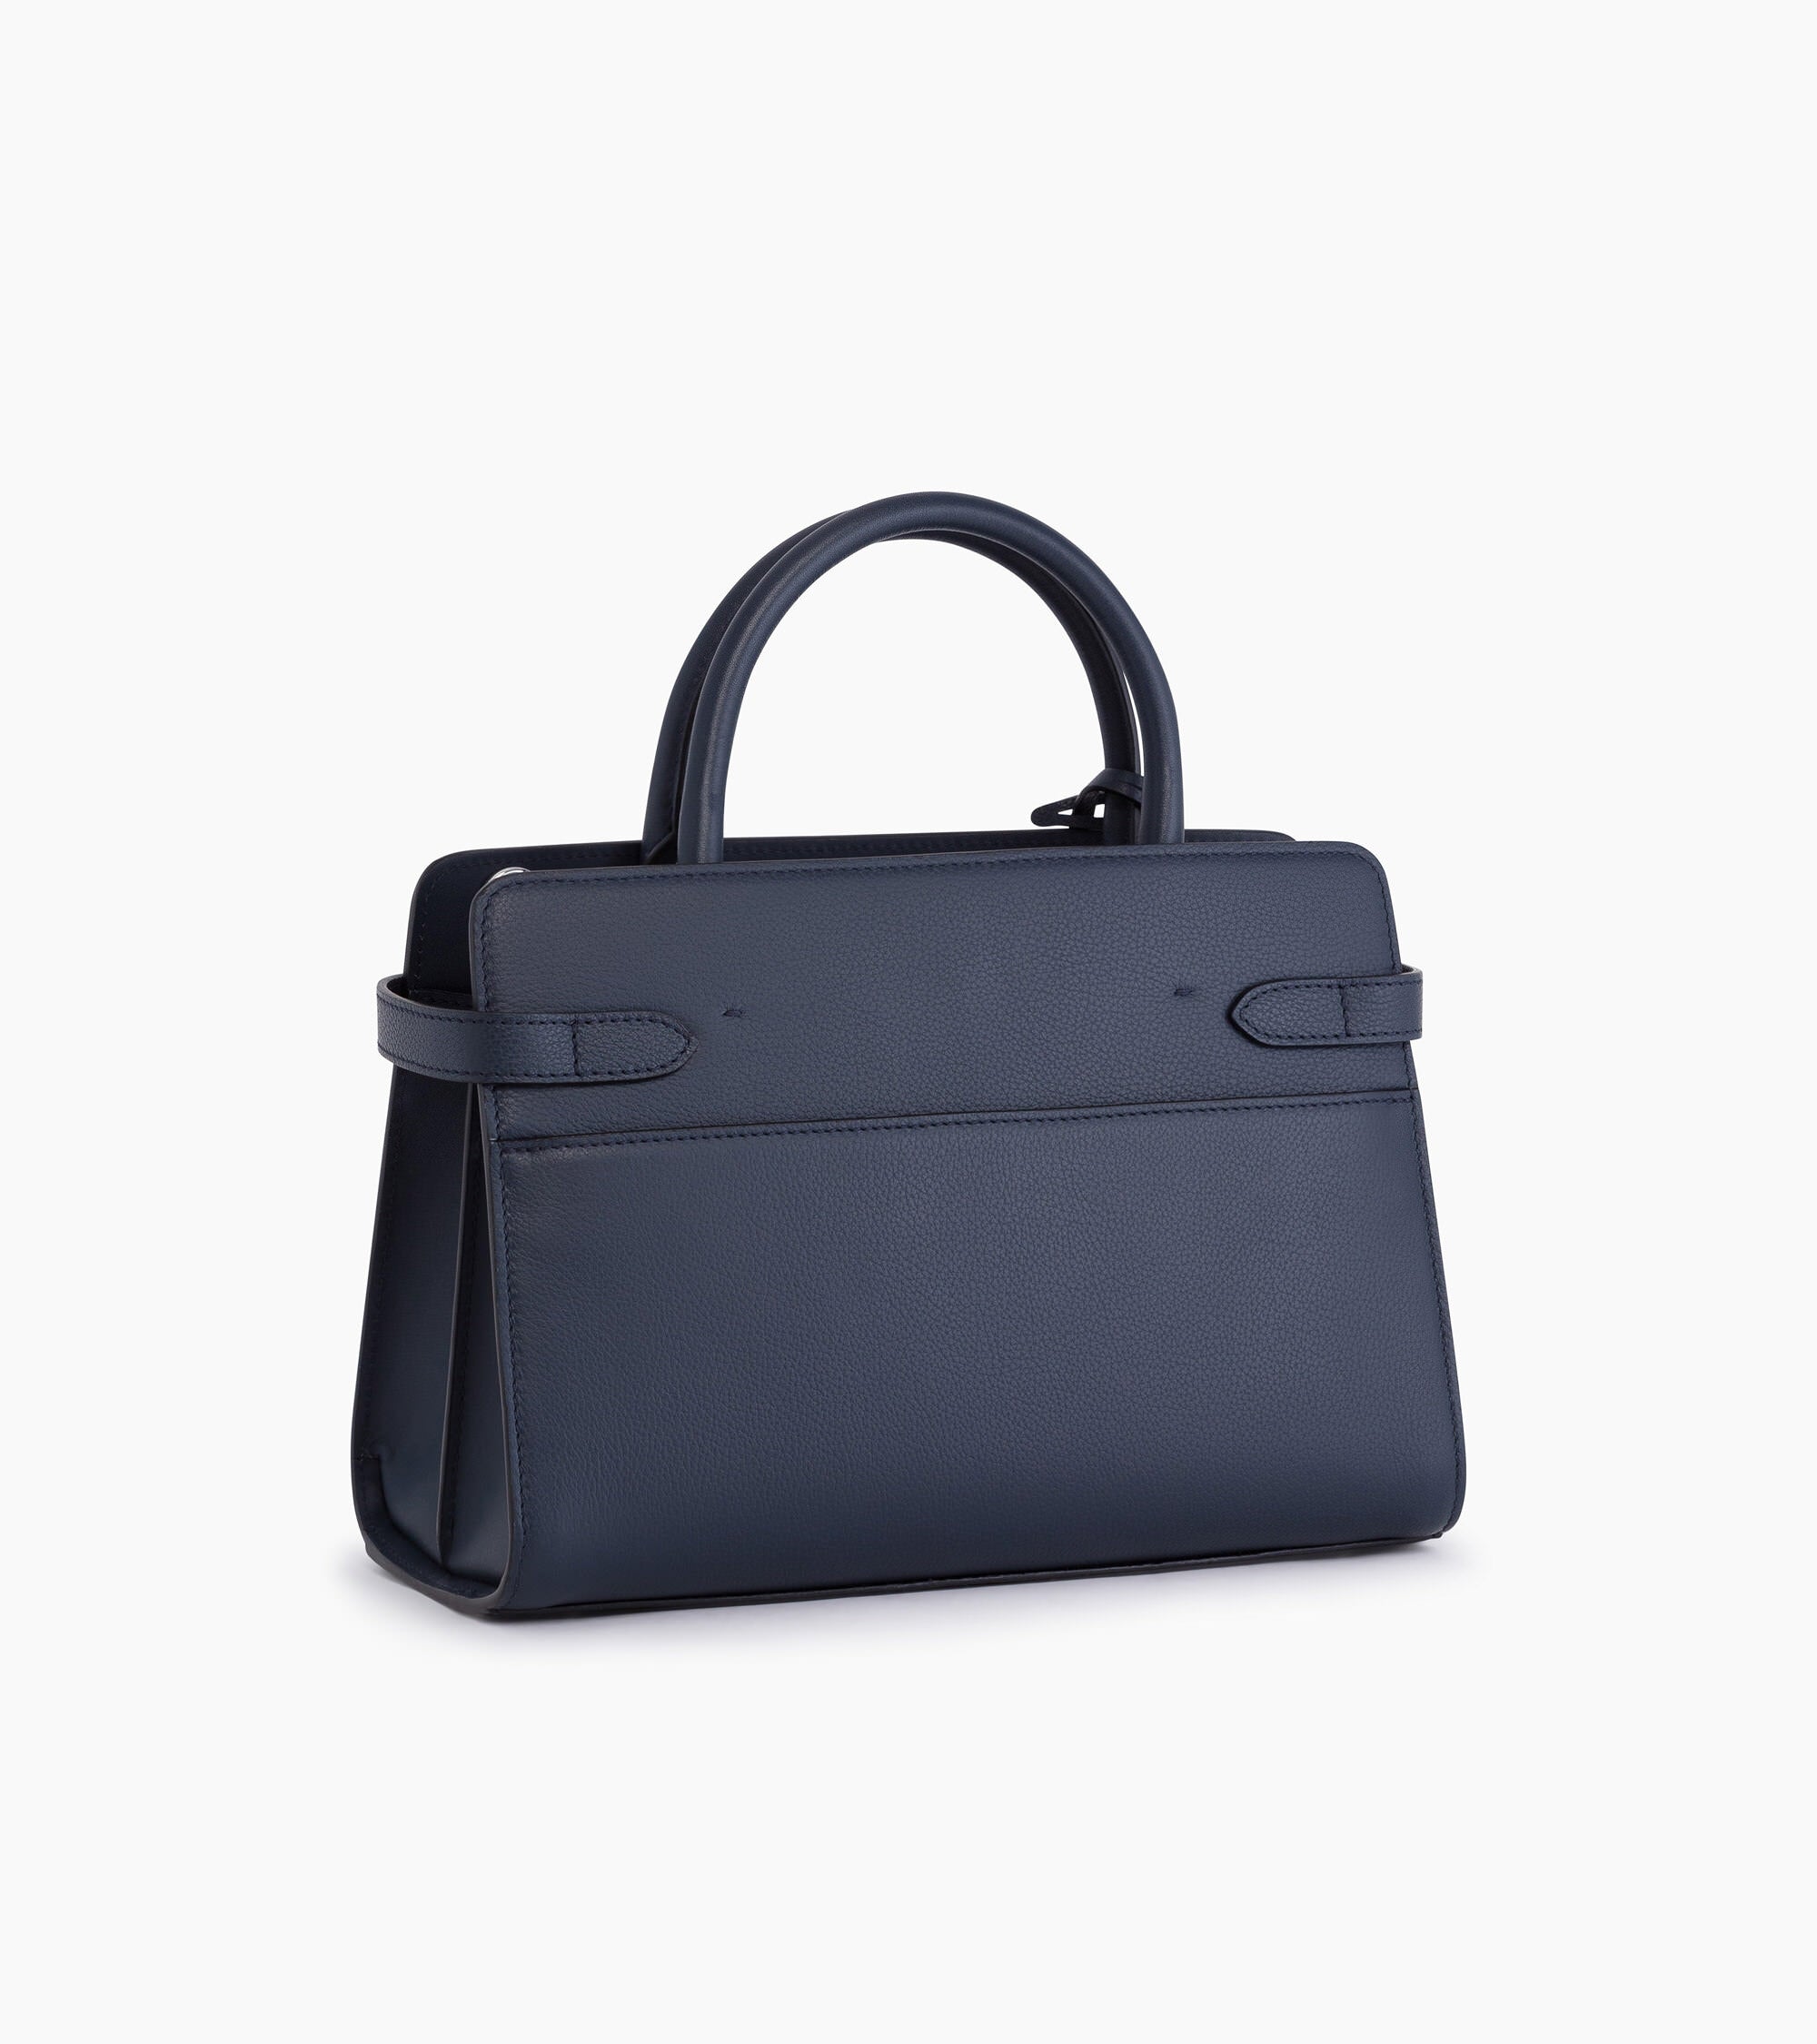 Emilie medium handbag in grained leather